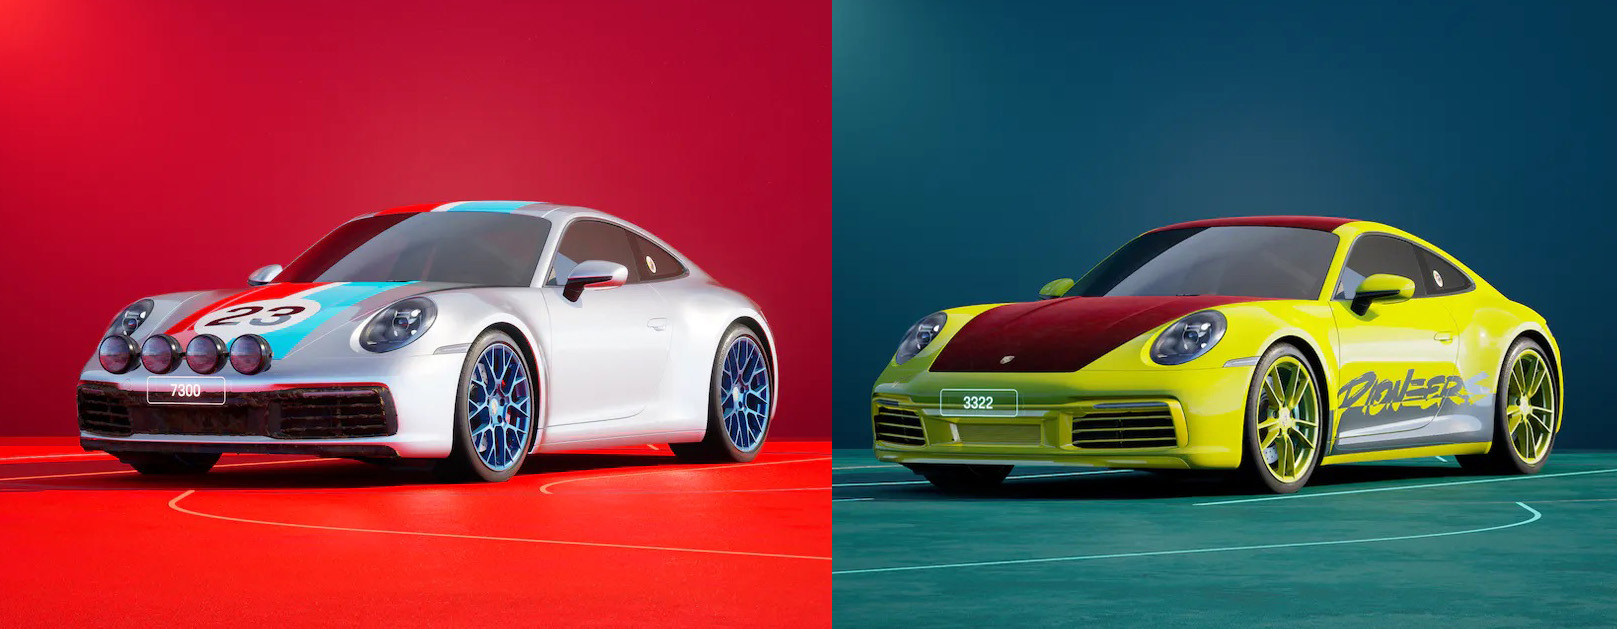 Silver Porsche 911 NFT and yellow Porsche 911 NFT